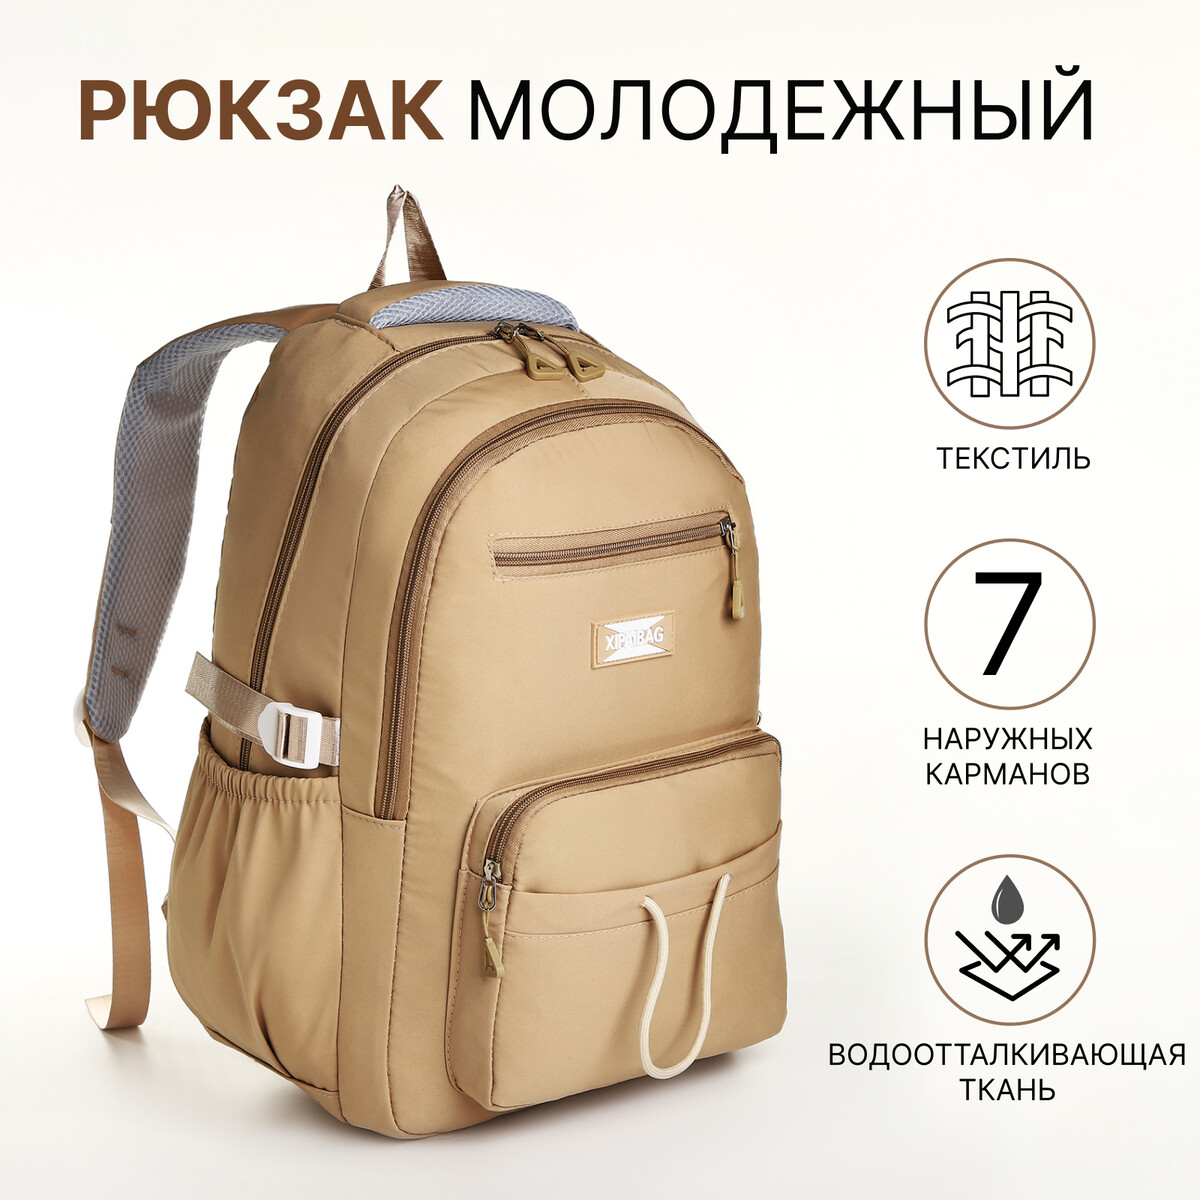 Рюкзак школьный из текстиля на молнии, 7 карманов, цвет коричневый рюкзак nuovita capcap tour marrone коричневый